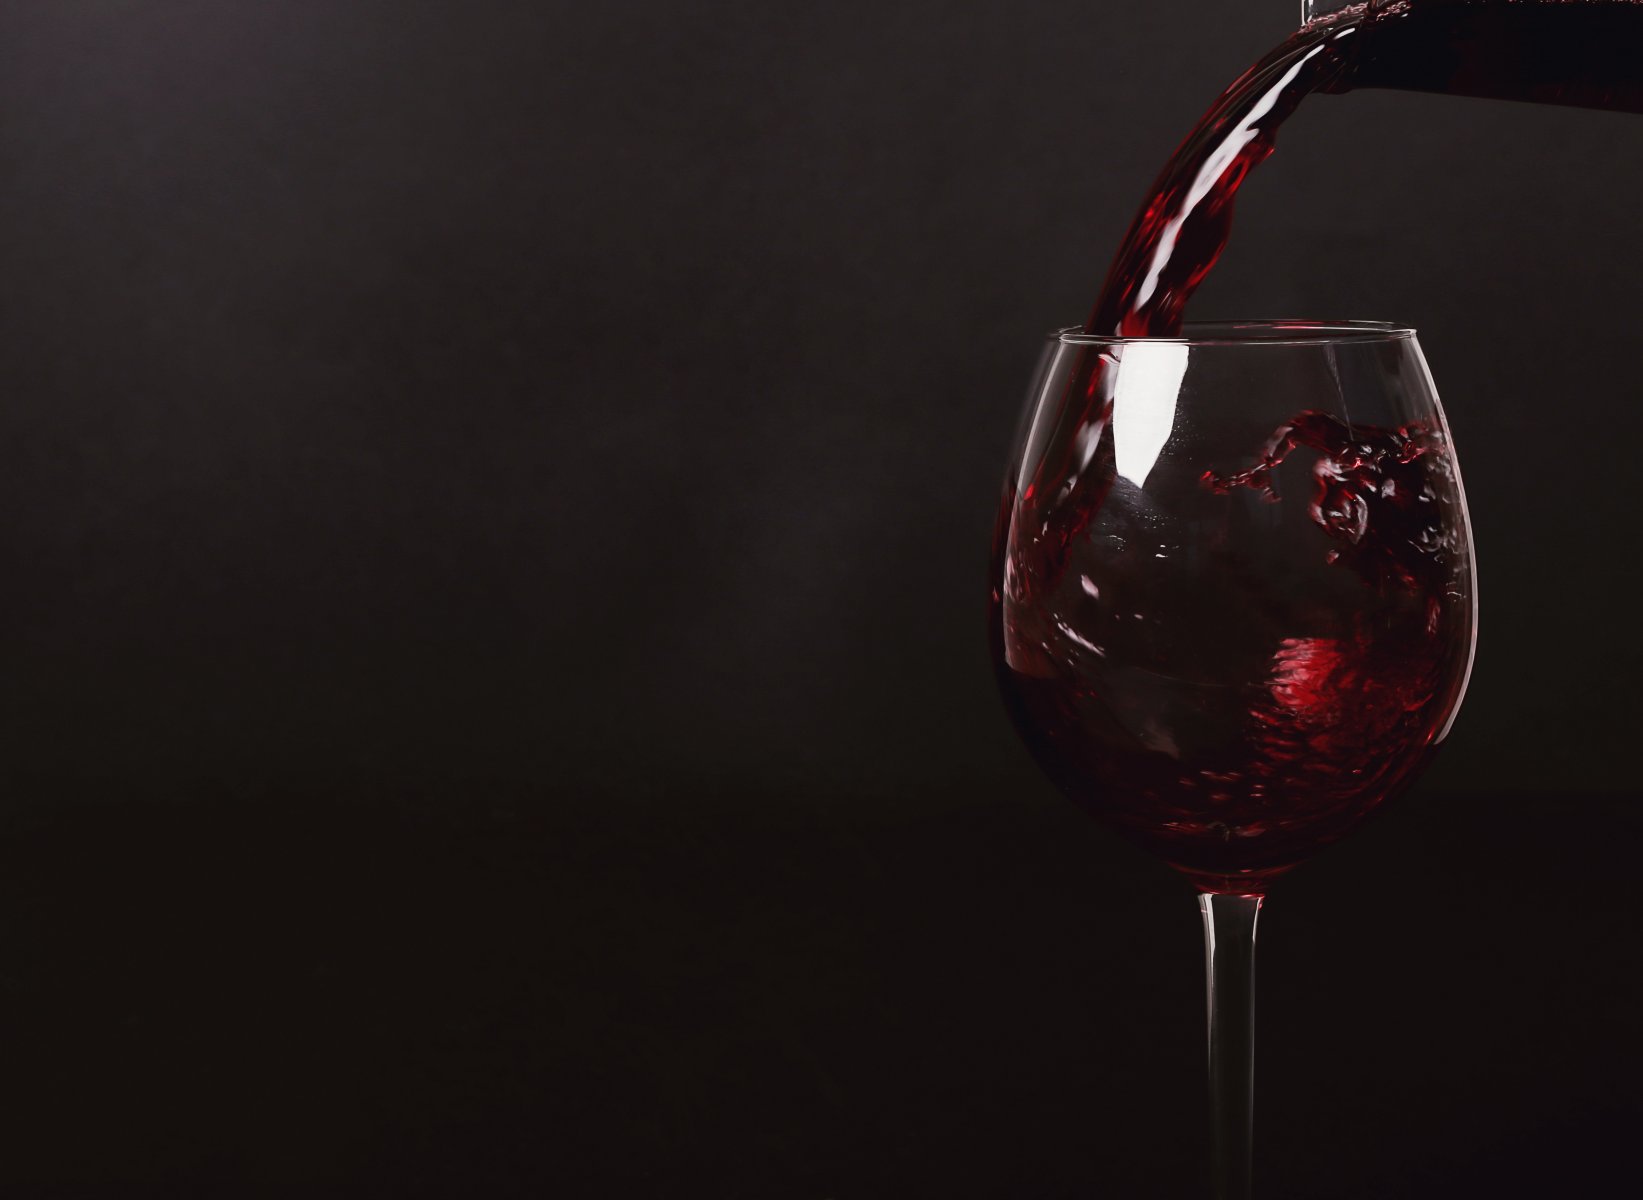 Нарколог: не стоит допивать открытое несколько дней назад вино